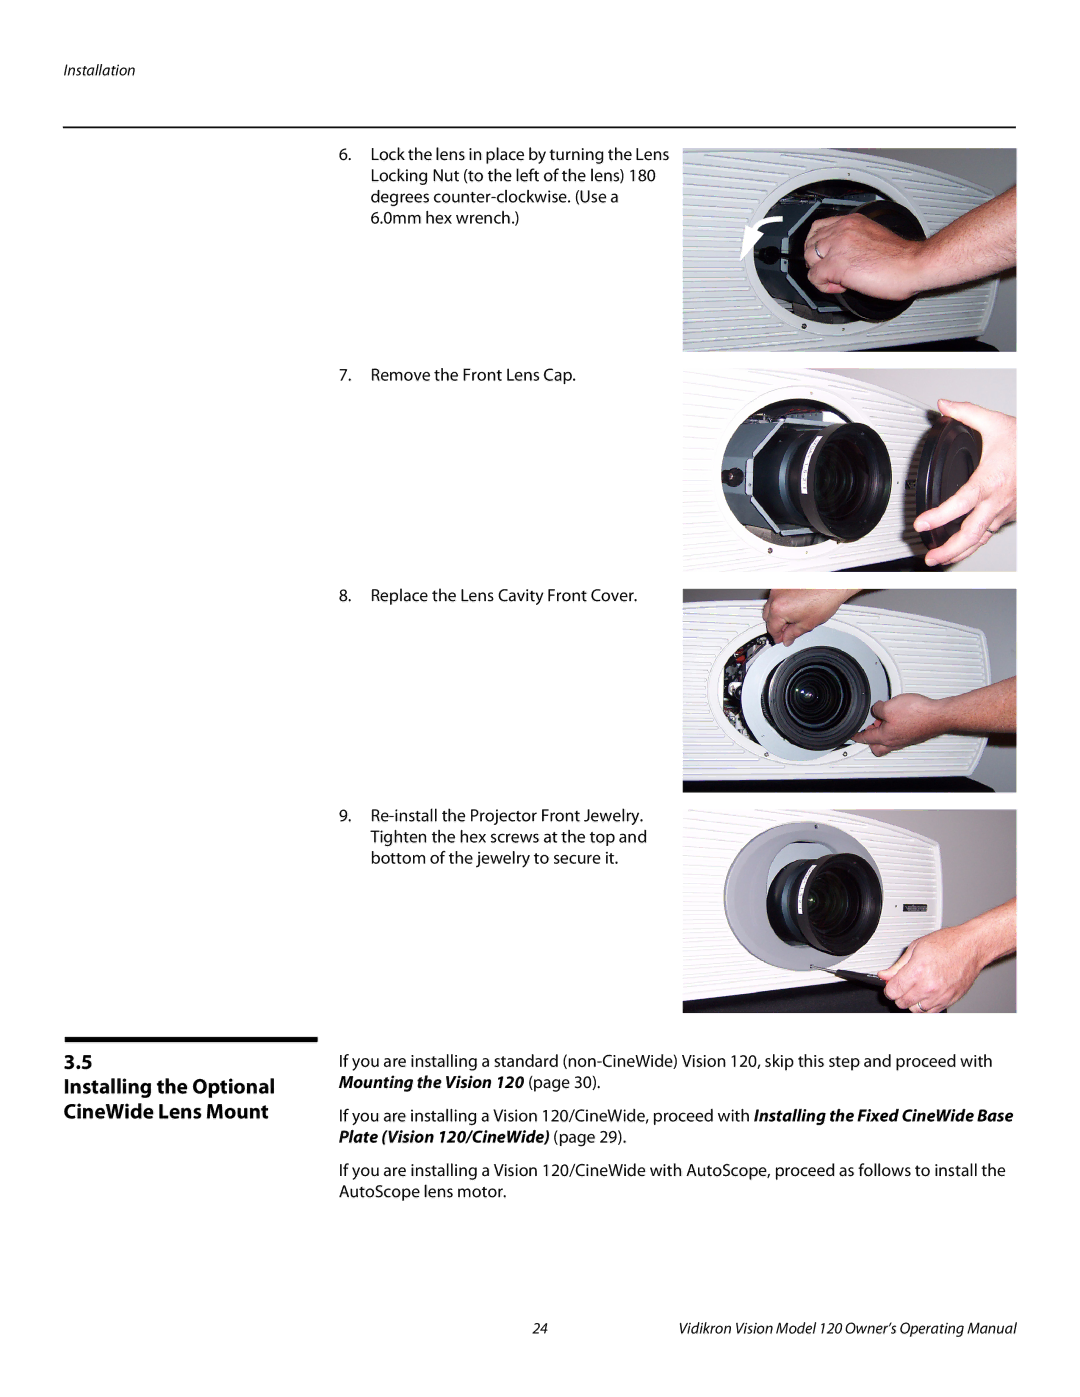 Vidikron v120 manual Installing the Optional CineWide Lens Mount 